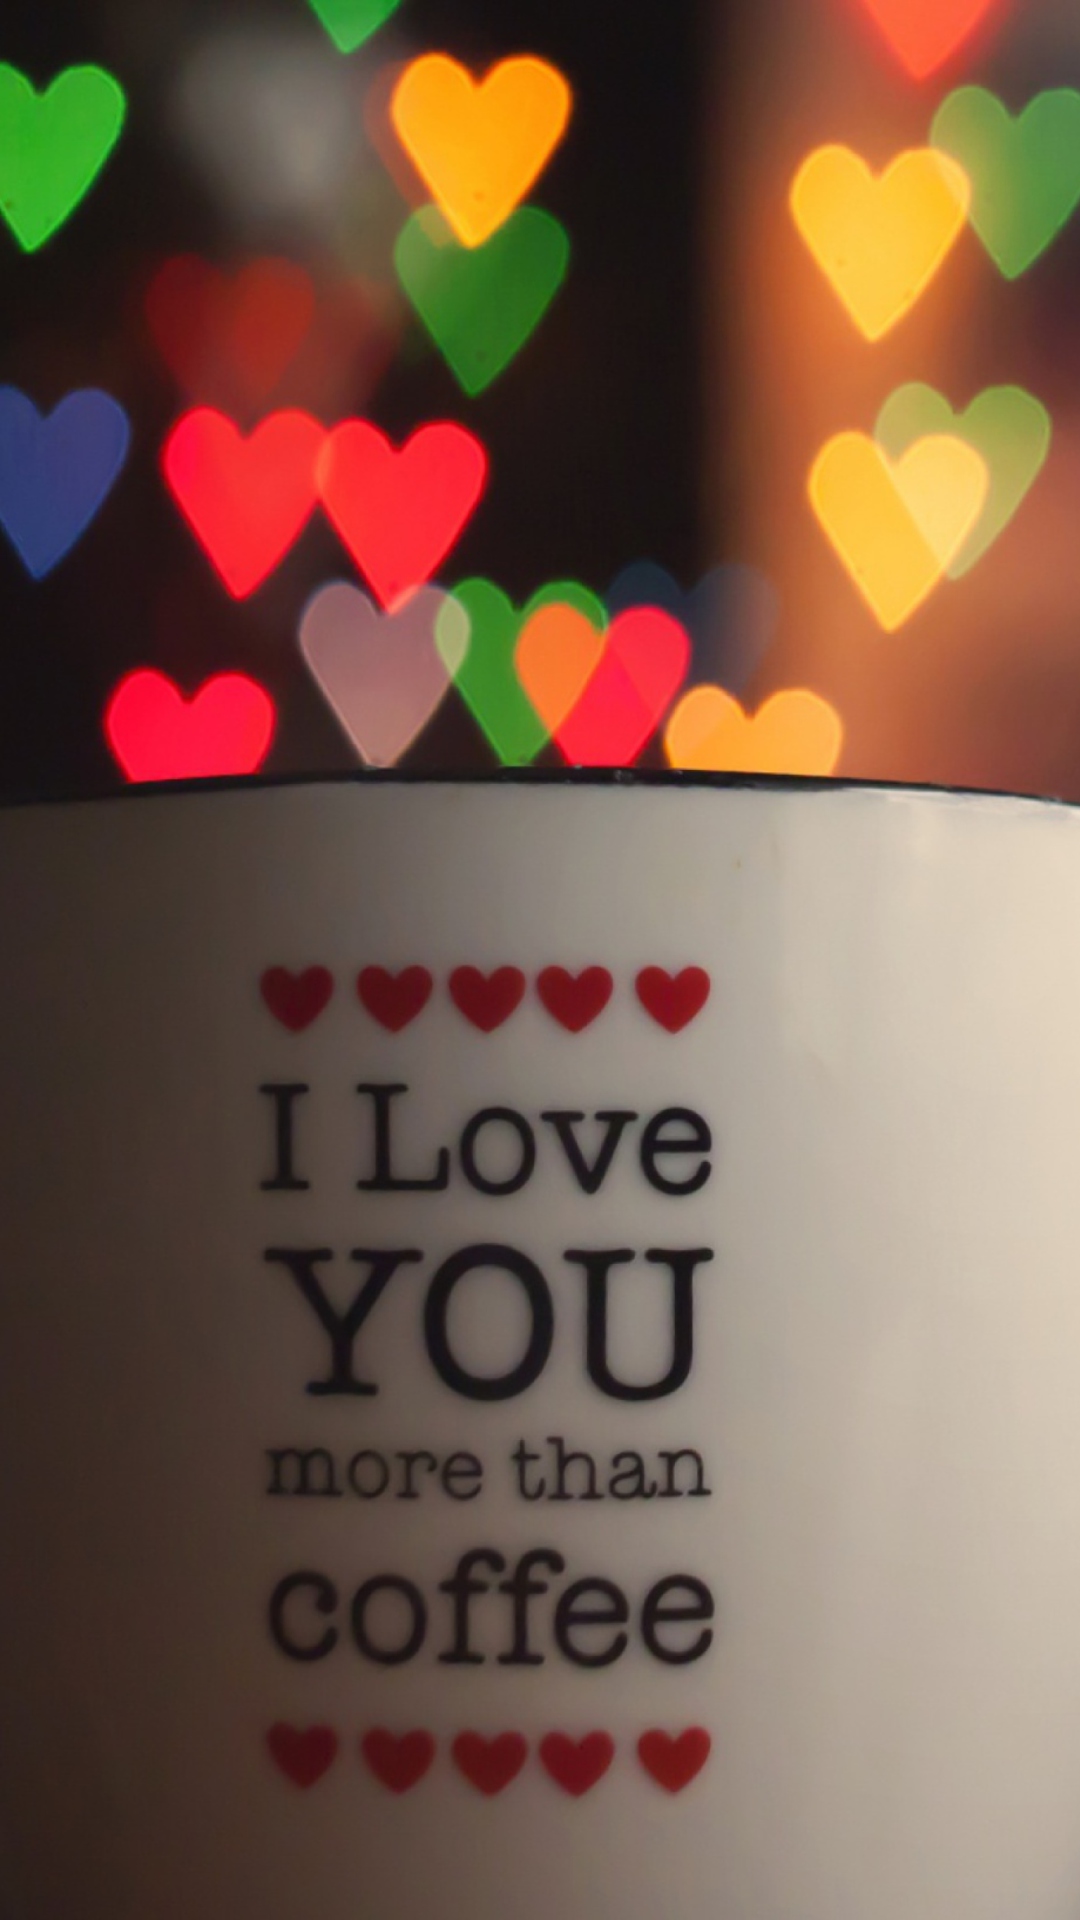 I Love You More Than Coffee screenshot #1 1080x1920